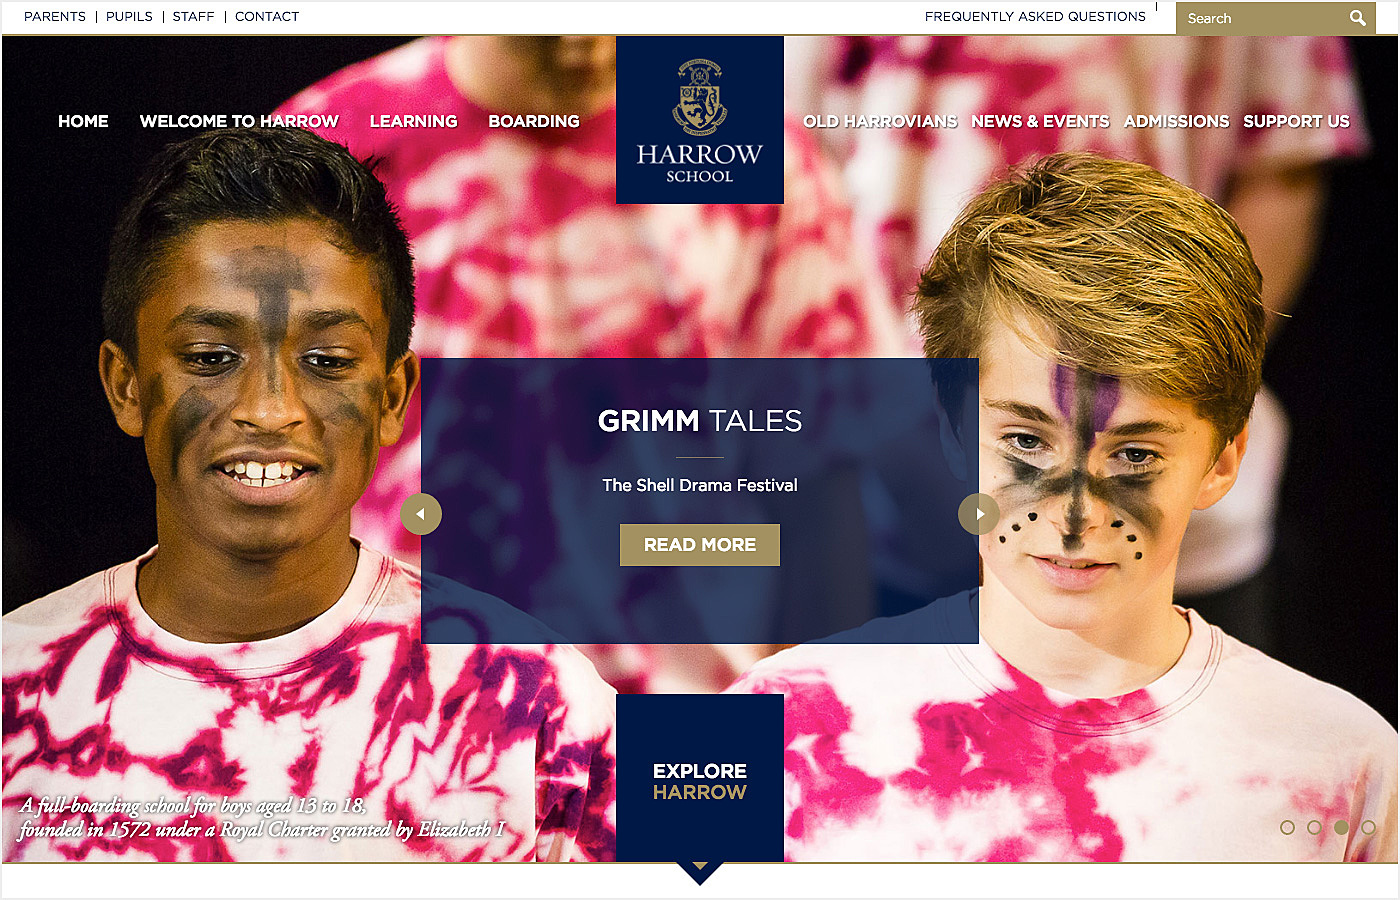 harrow school website example - educational website design examples